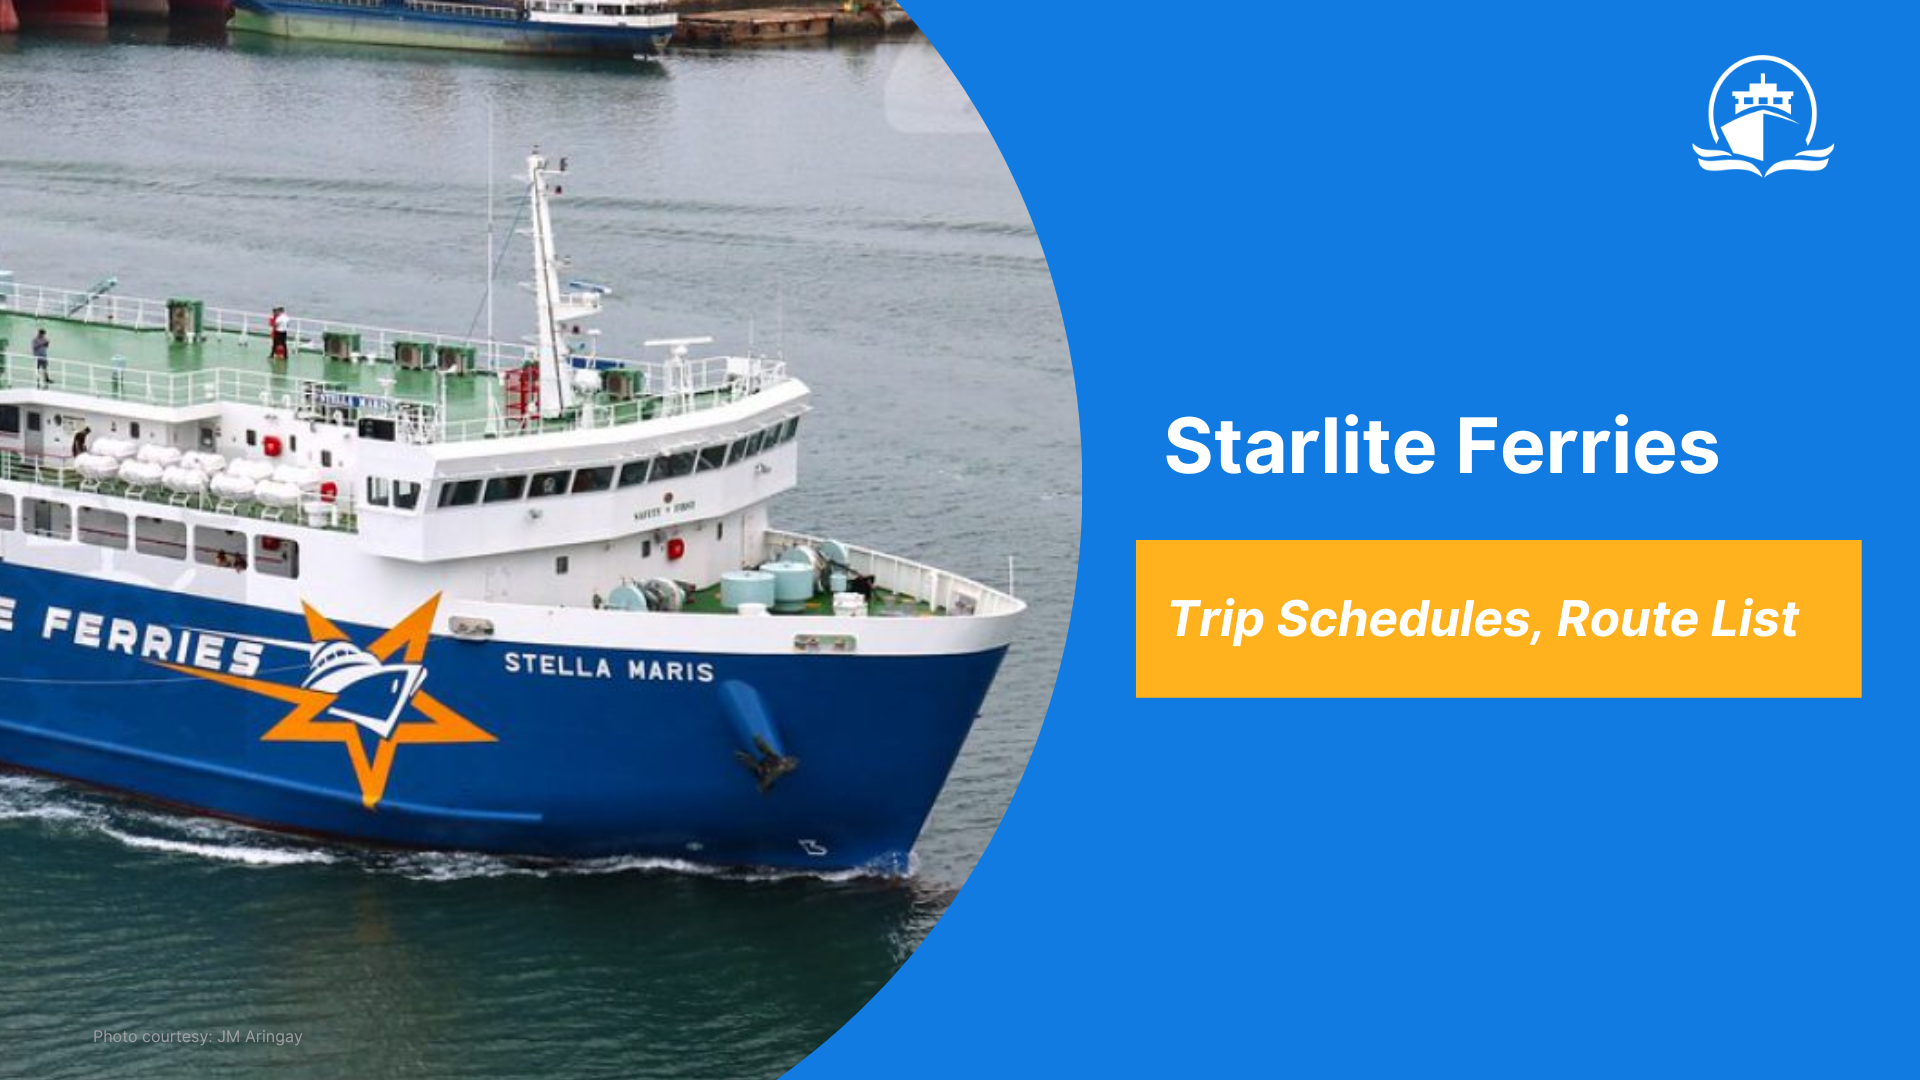 Starlite Ferries schedule